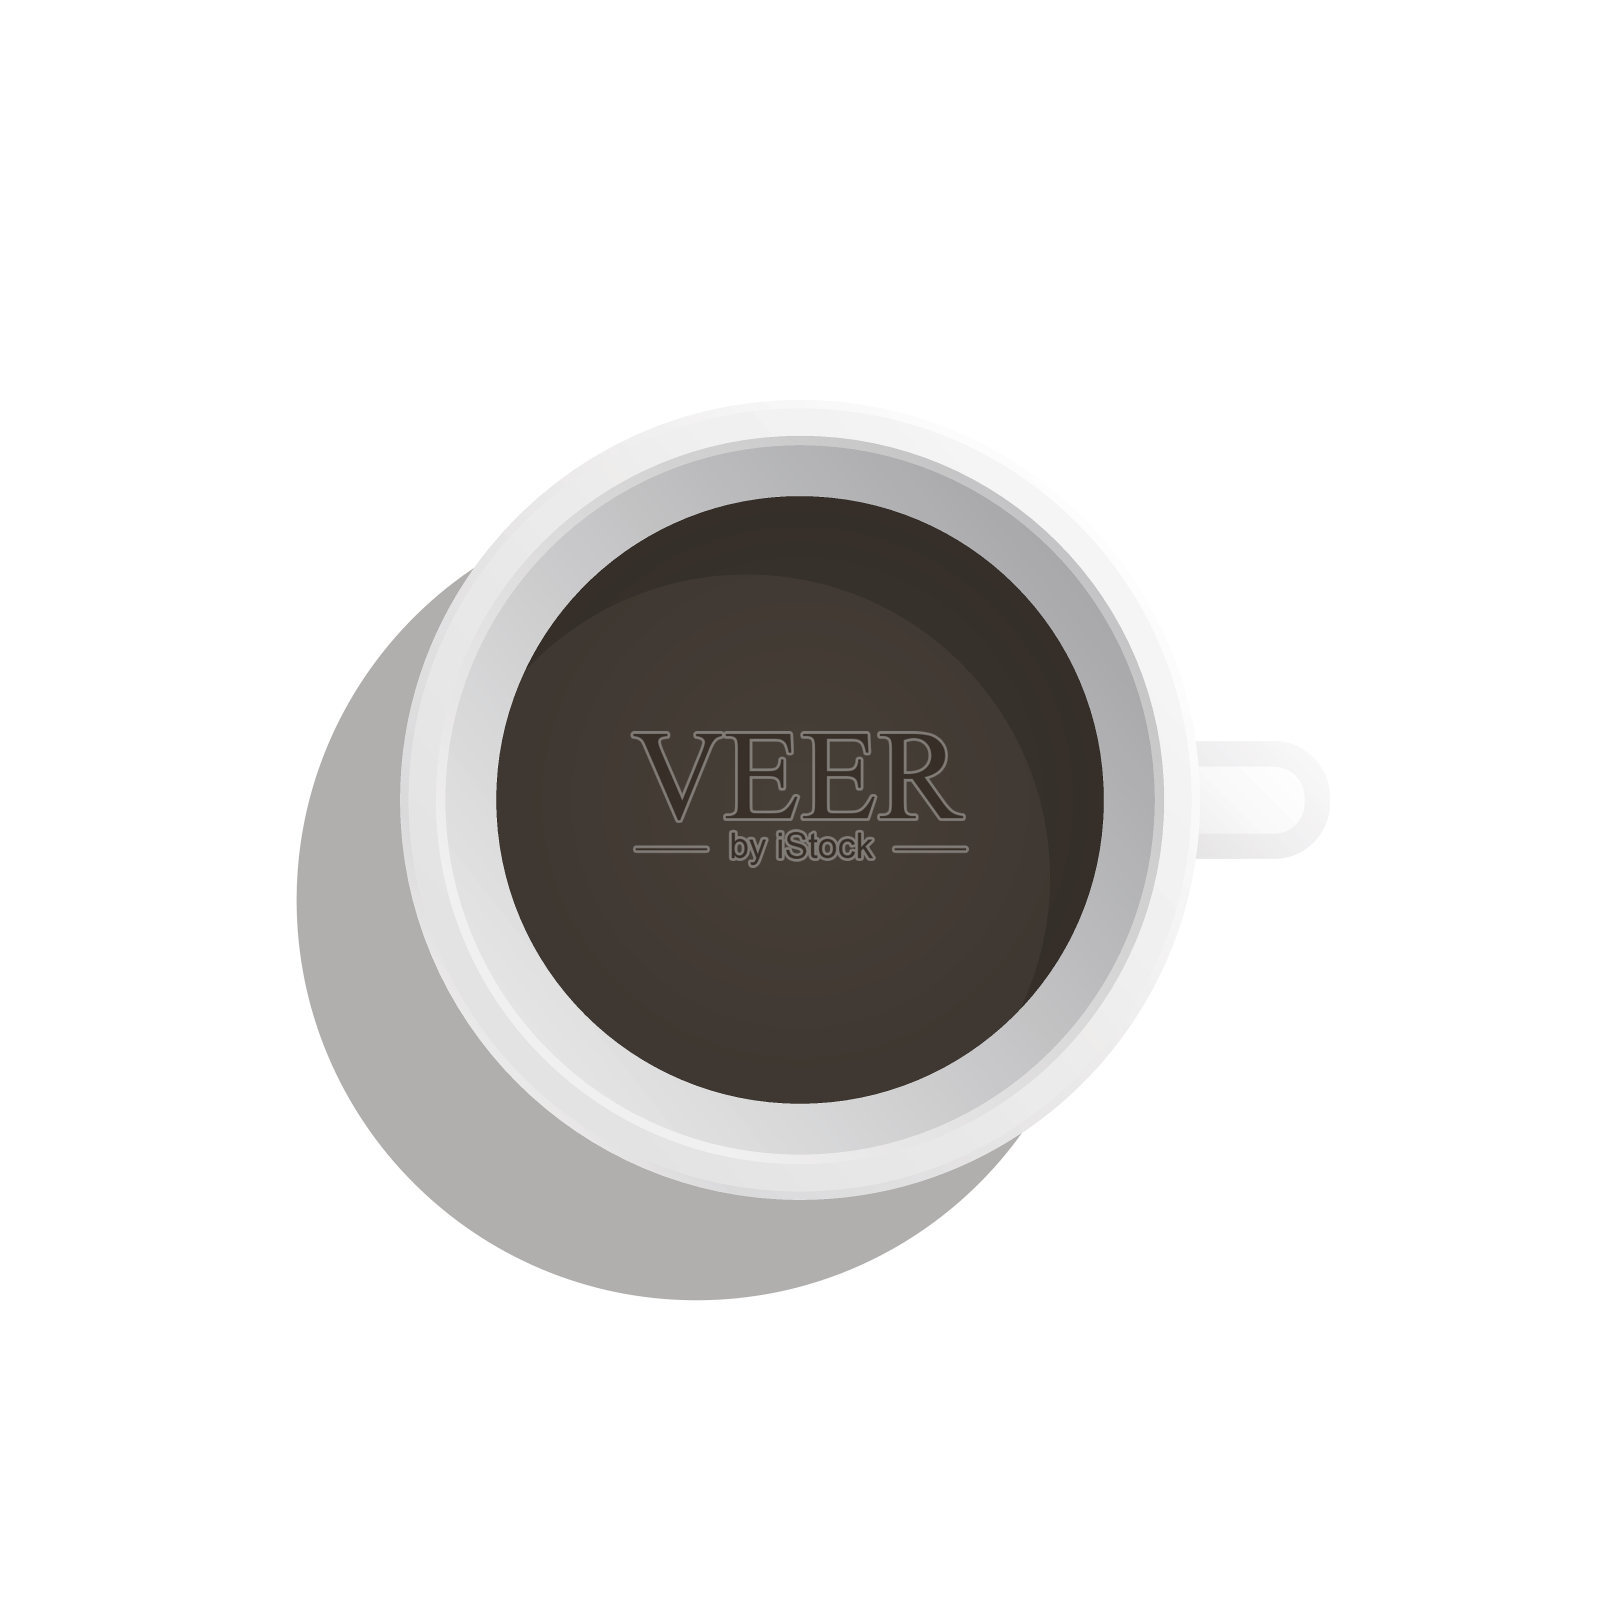 咖啡杯平设计元素图片